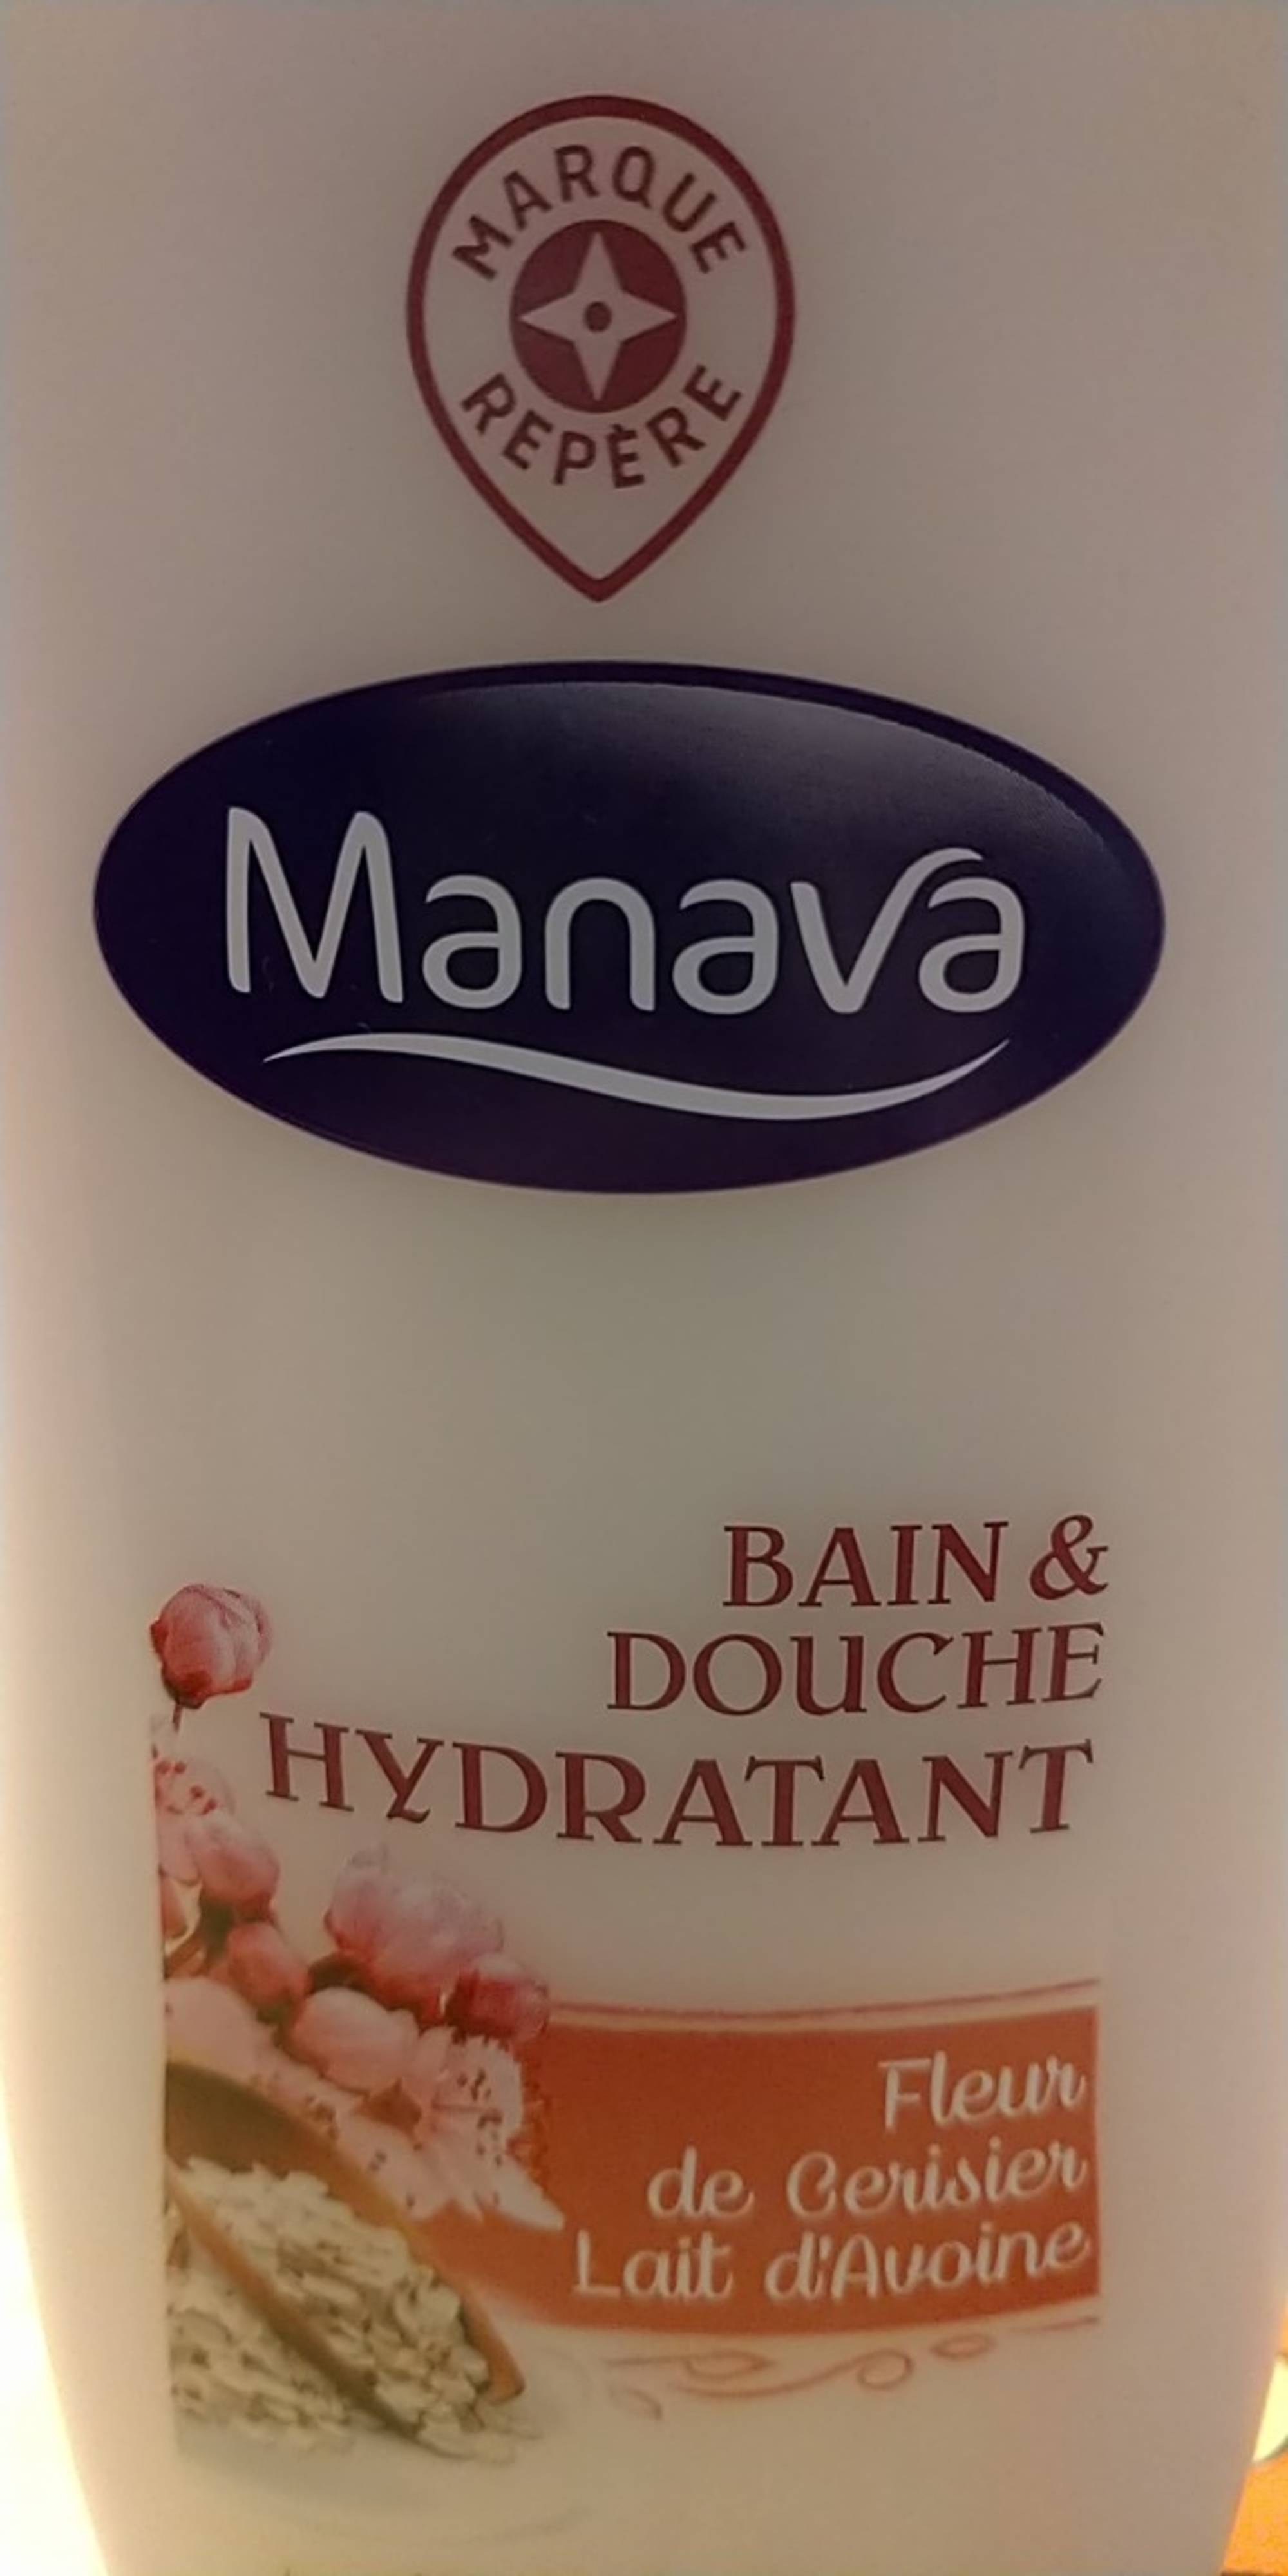 MARQUE REPÈRE - Manava - Bain & douche hydratant fleur de cerisier lait d'avoine